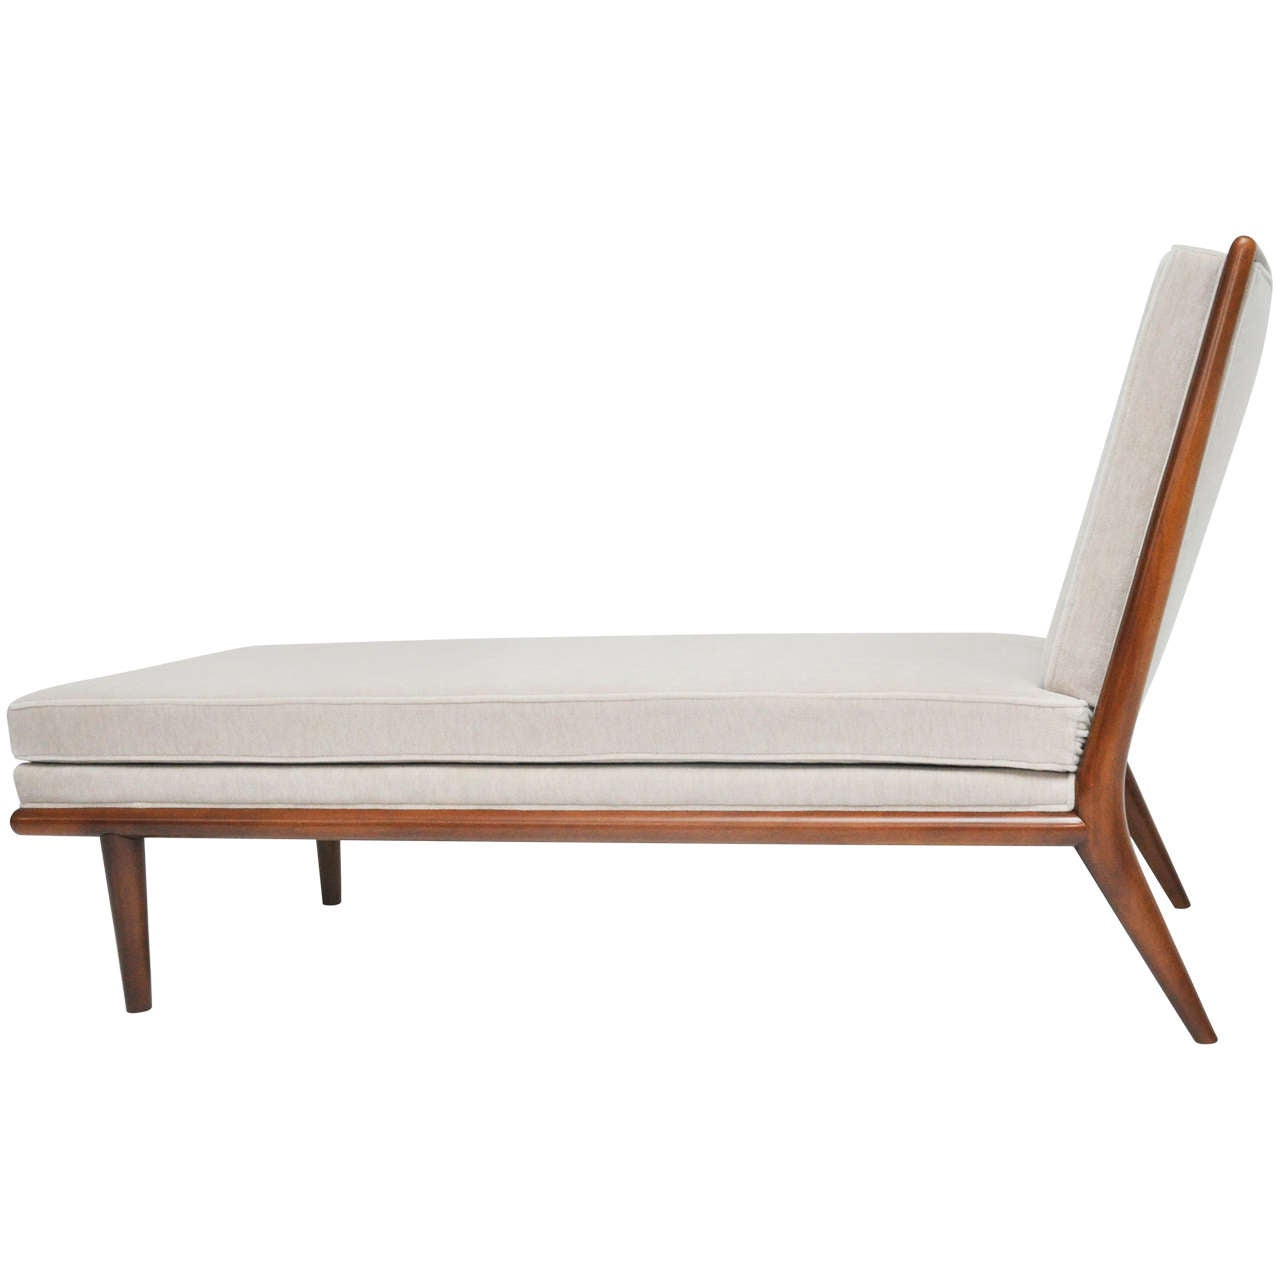 Elegant chaise longue by TH Robsjohn-Gibbings. Fully restored. Refinished frame. Reupholstered in plush velvet upholstery.